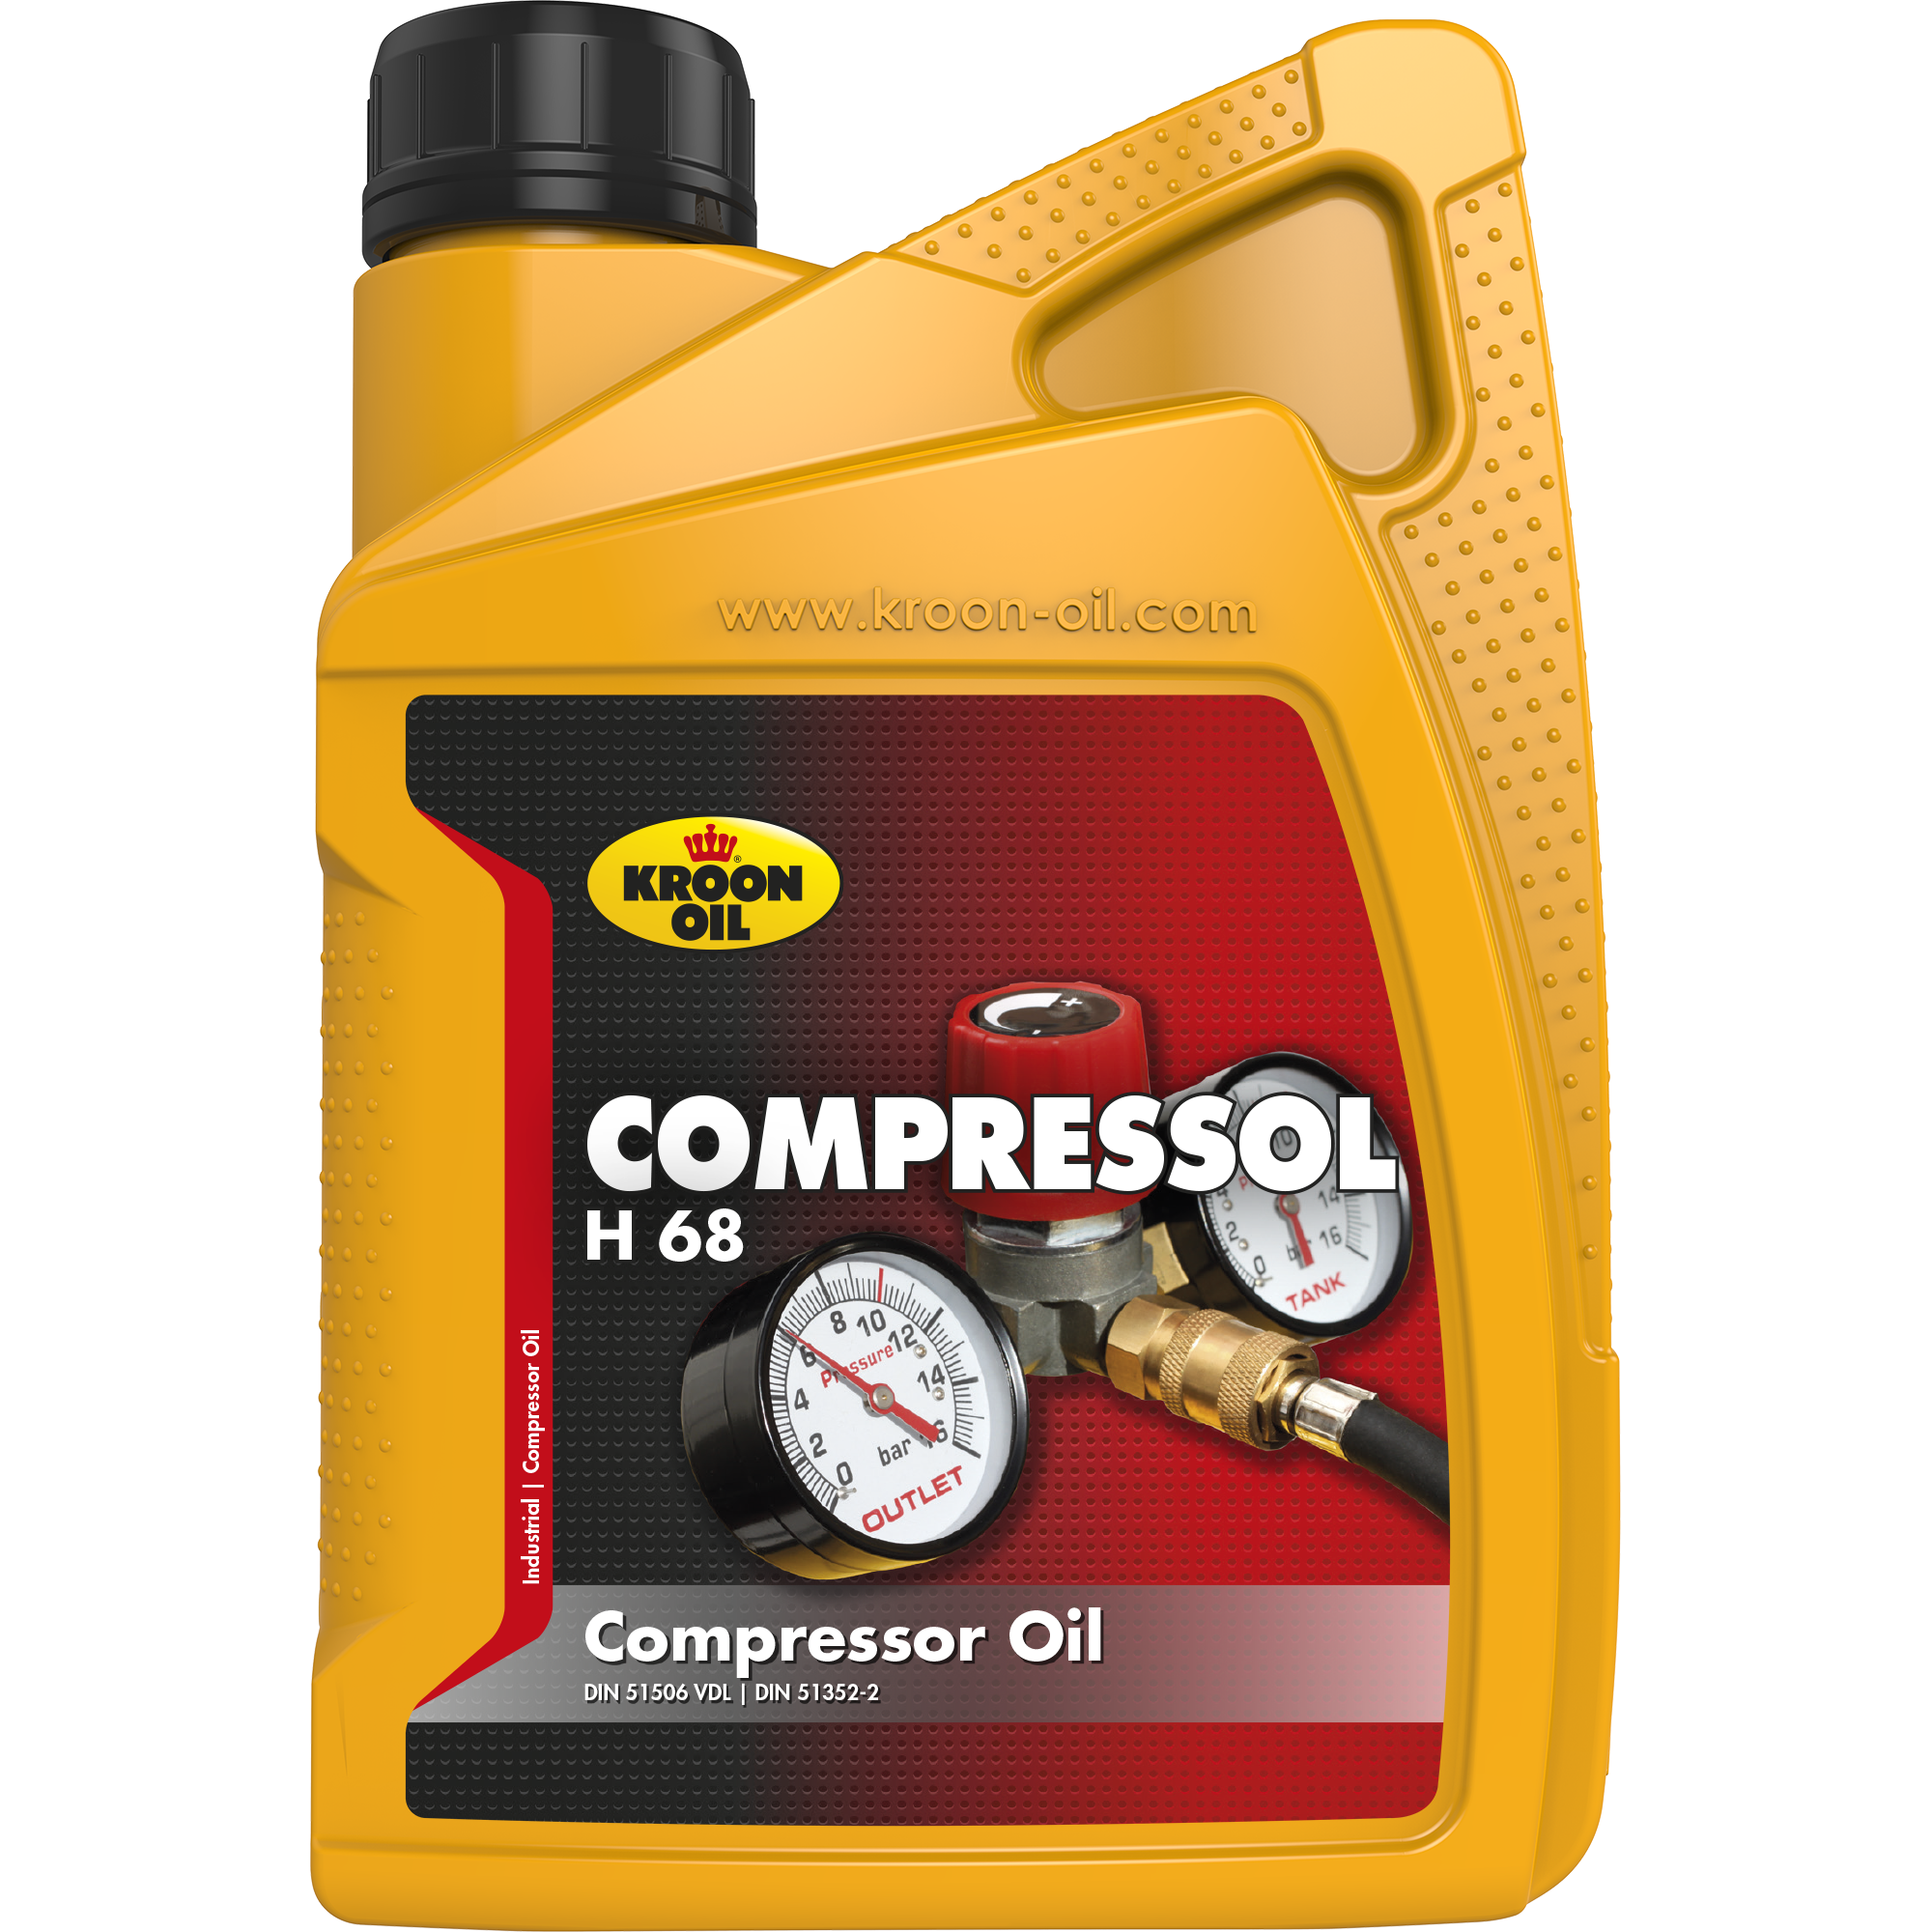 02218-1 Compressol H 68 is een compressorolie gebaseerd op zeer hoog doorgeraffineerde basisolie, met van nature een hoge weerstand tegen veroudering.